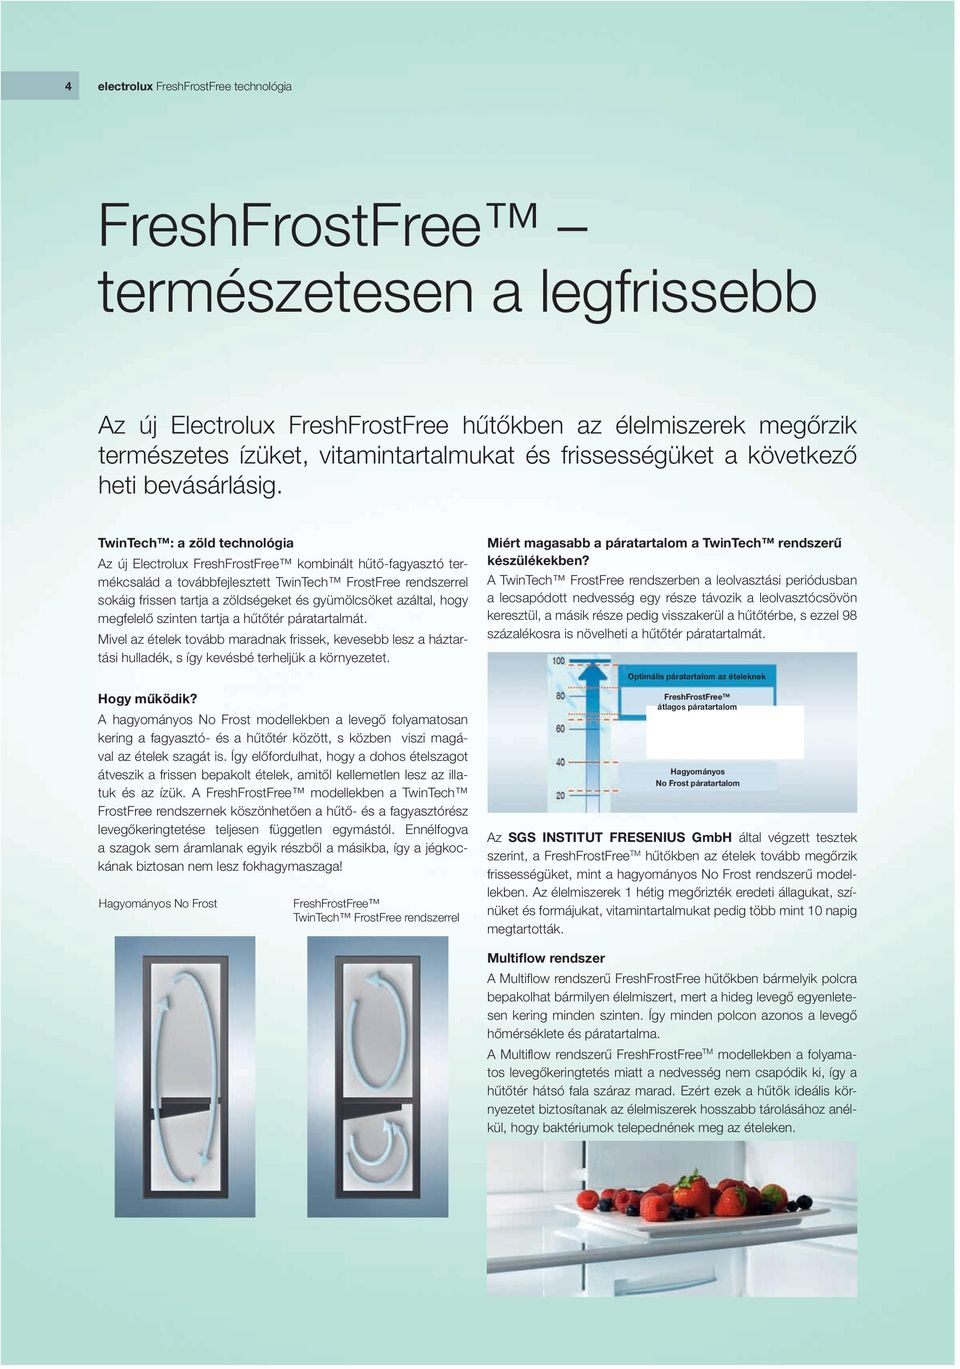 TwinTech : a zöld technológia Az új Electrolux FreshFrostFree kombinált hűtő-fagyasztó termékcsalád a továbbfejlesztett TwinTech FrostFree rendszerrel sokáig frissen tartja a zöldségeket és